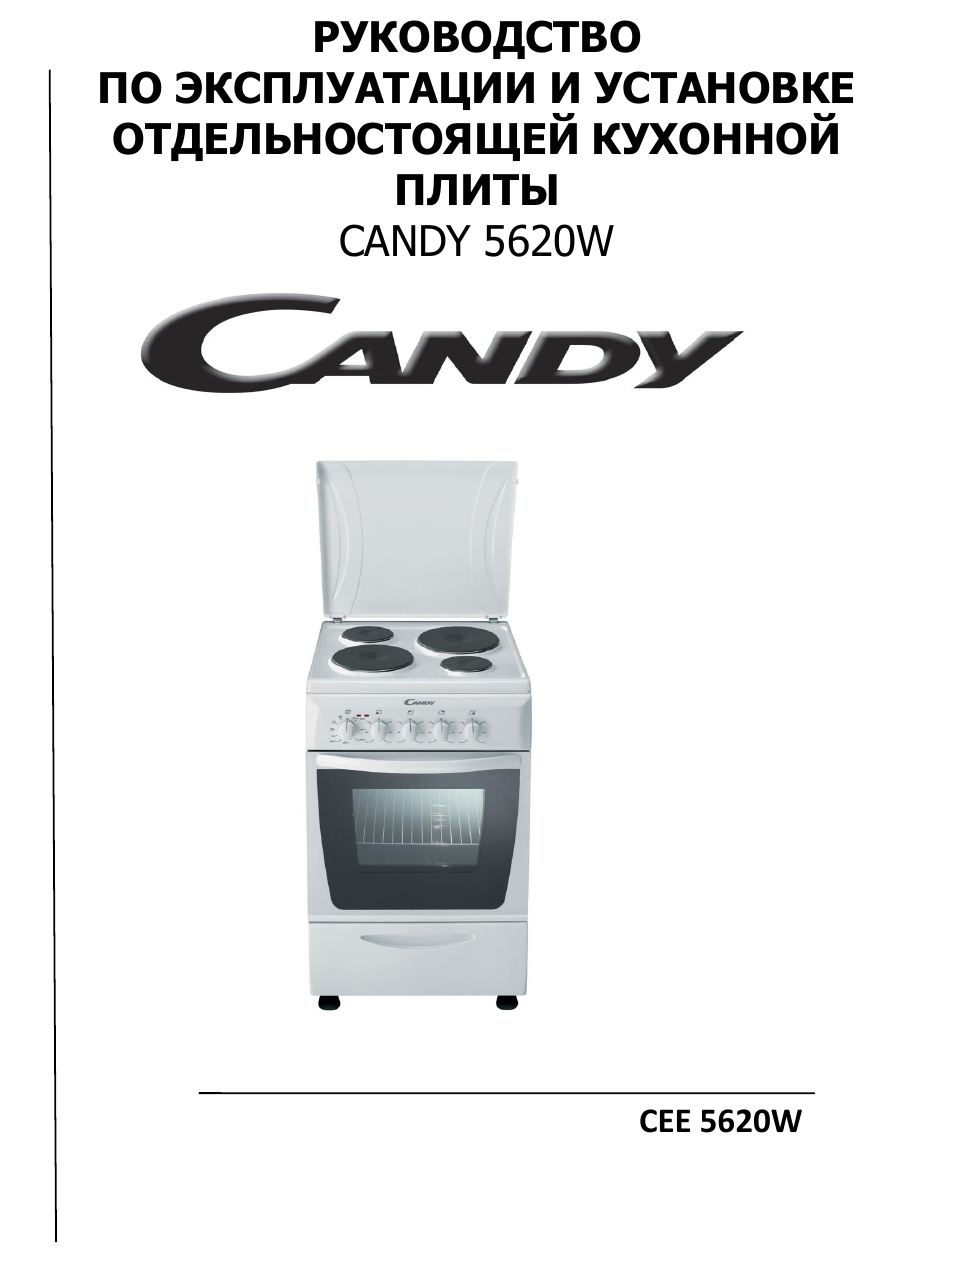 Электрическая плита Candy cee 5620 w